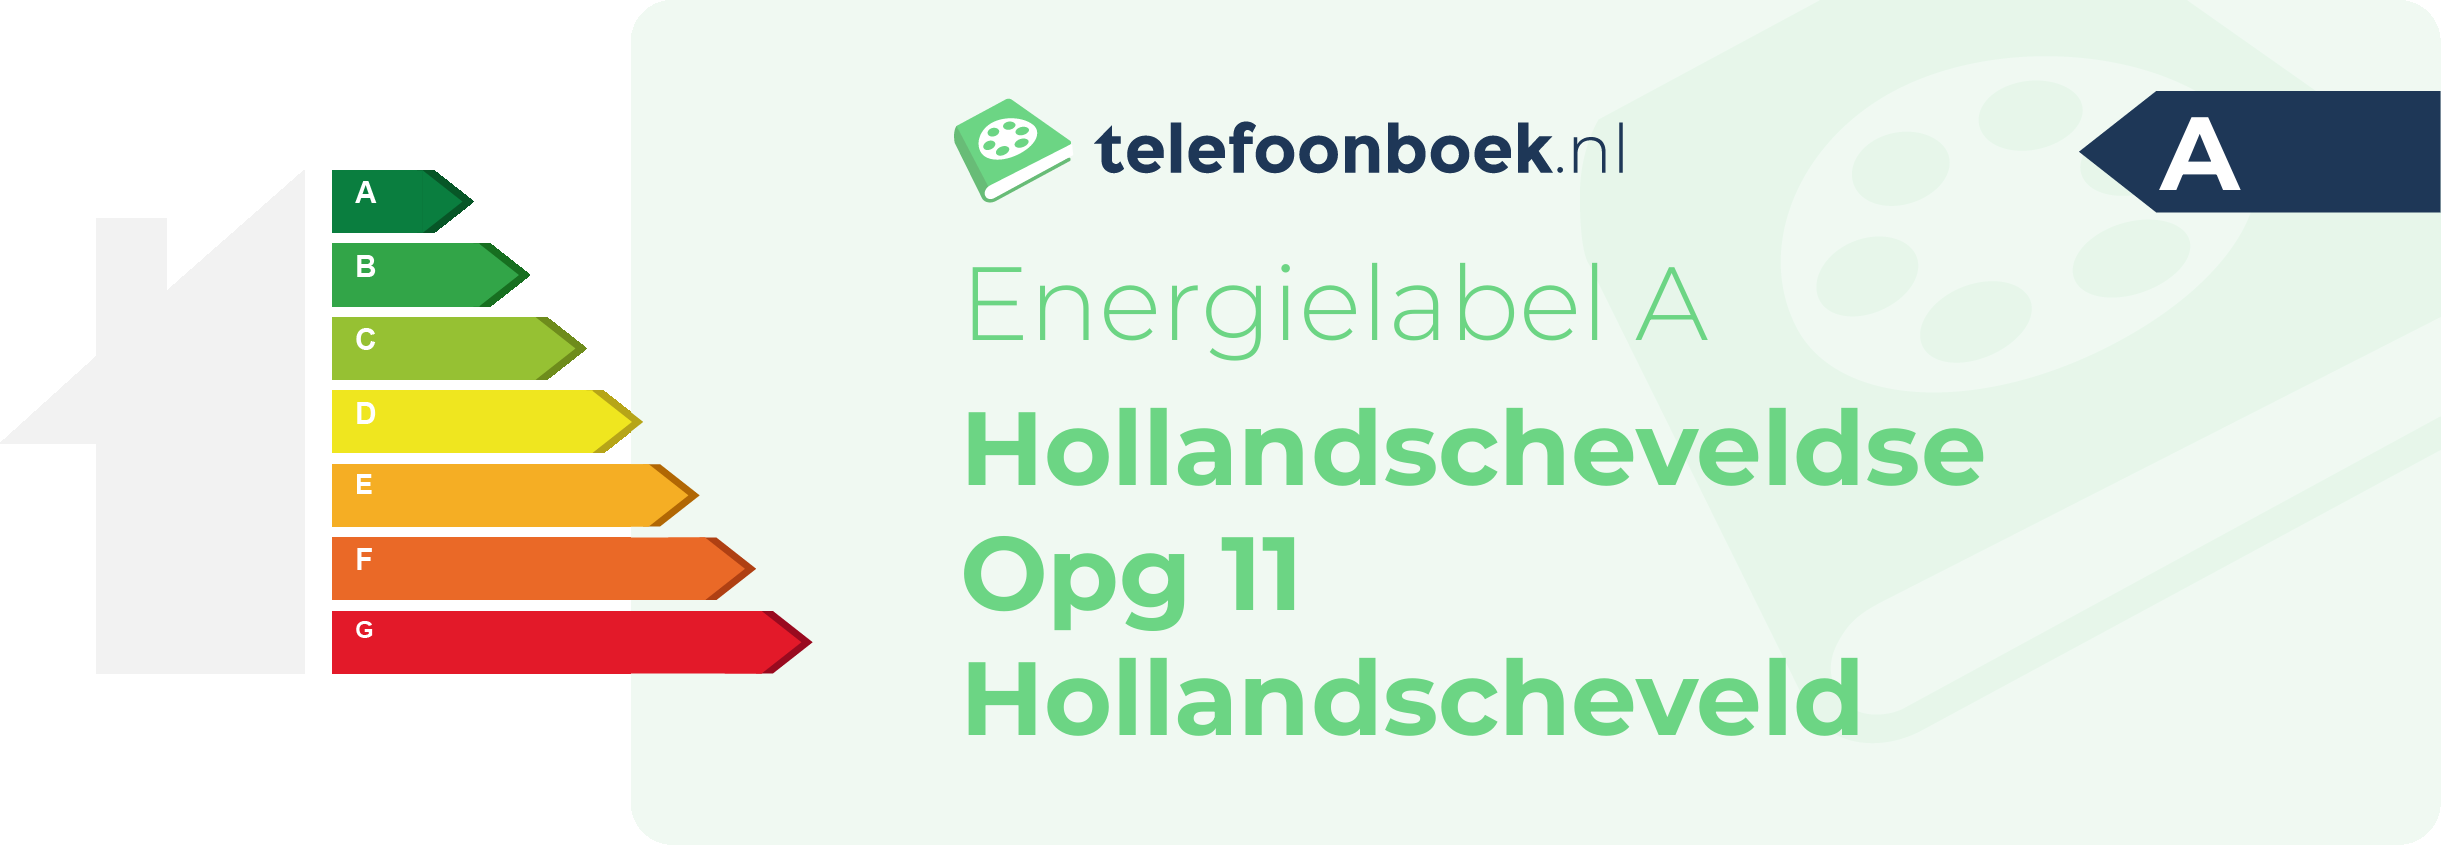 Energielabel Hollandscheveldse Opg 11 Hollandscheveld